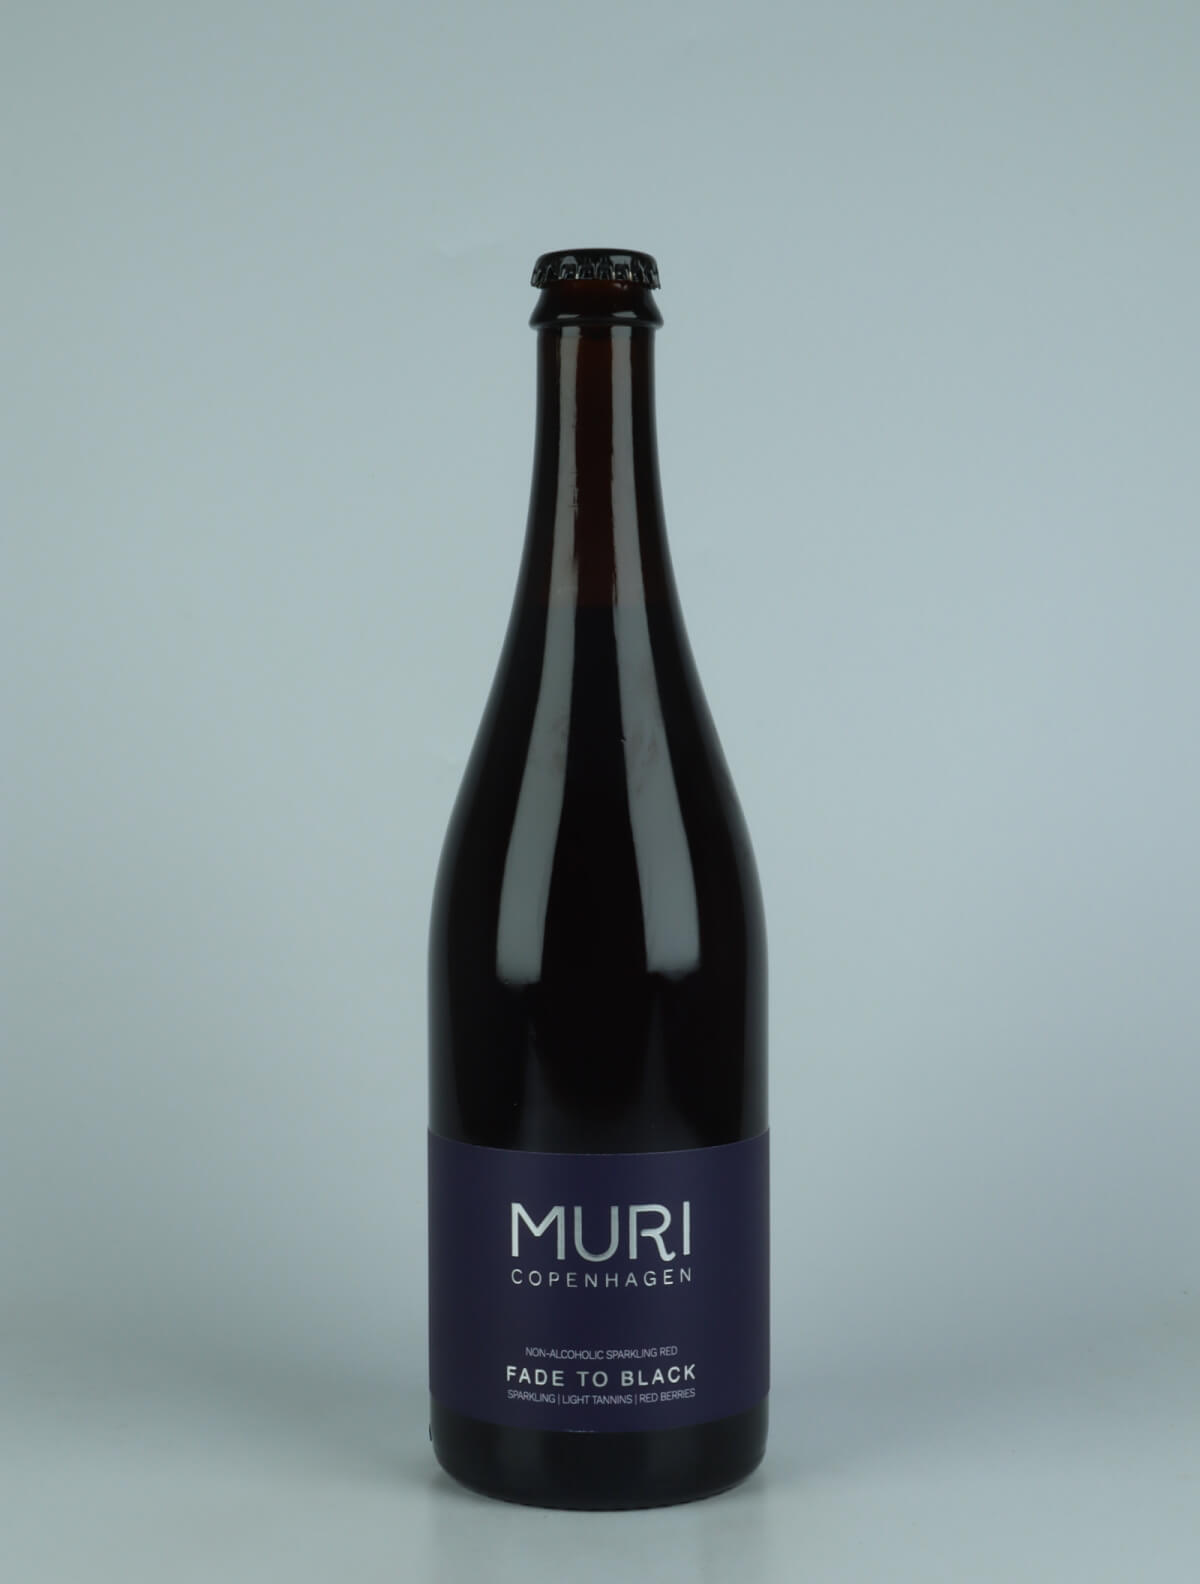 En flaske N.V. Fade to Black Alkoholfri fra Muri, København i Danmark